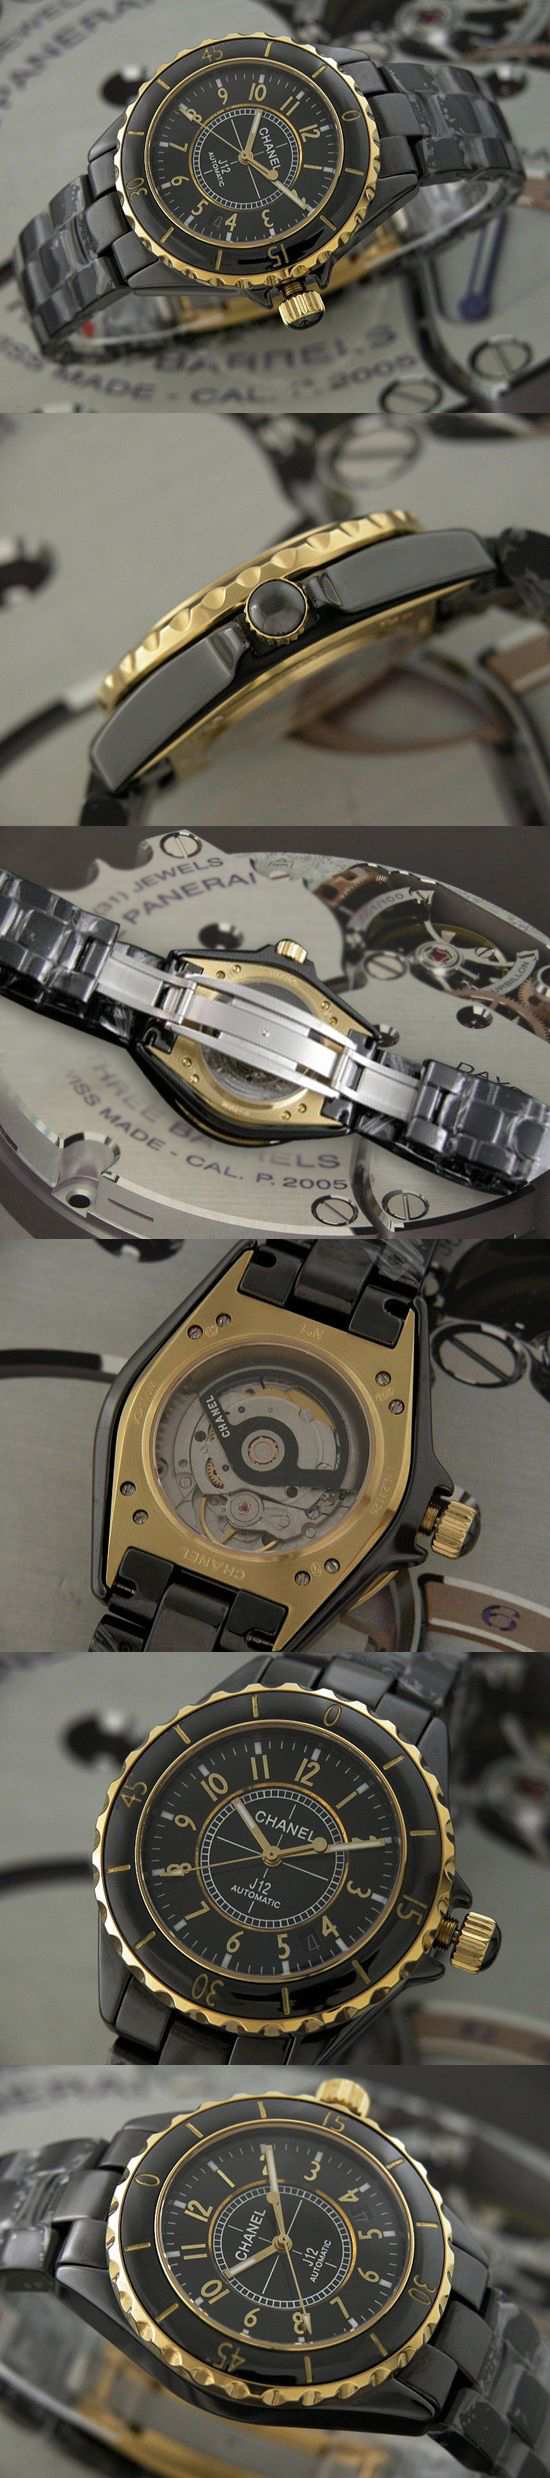 おしゃれなブランド時計がシャネル-CHANEL-H2129-J12-男性用を提供します.